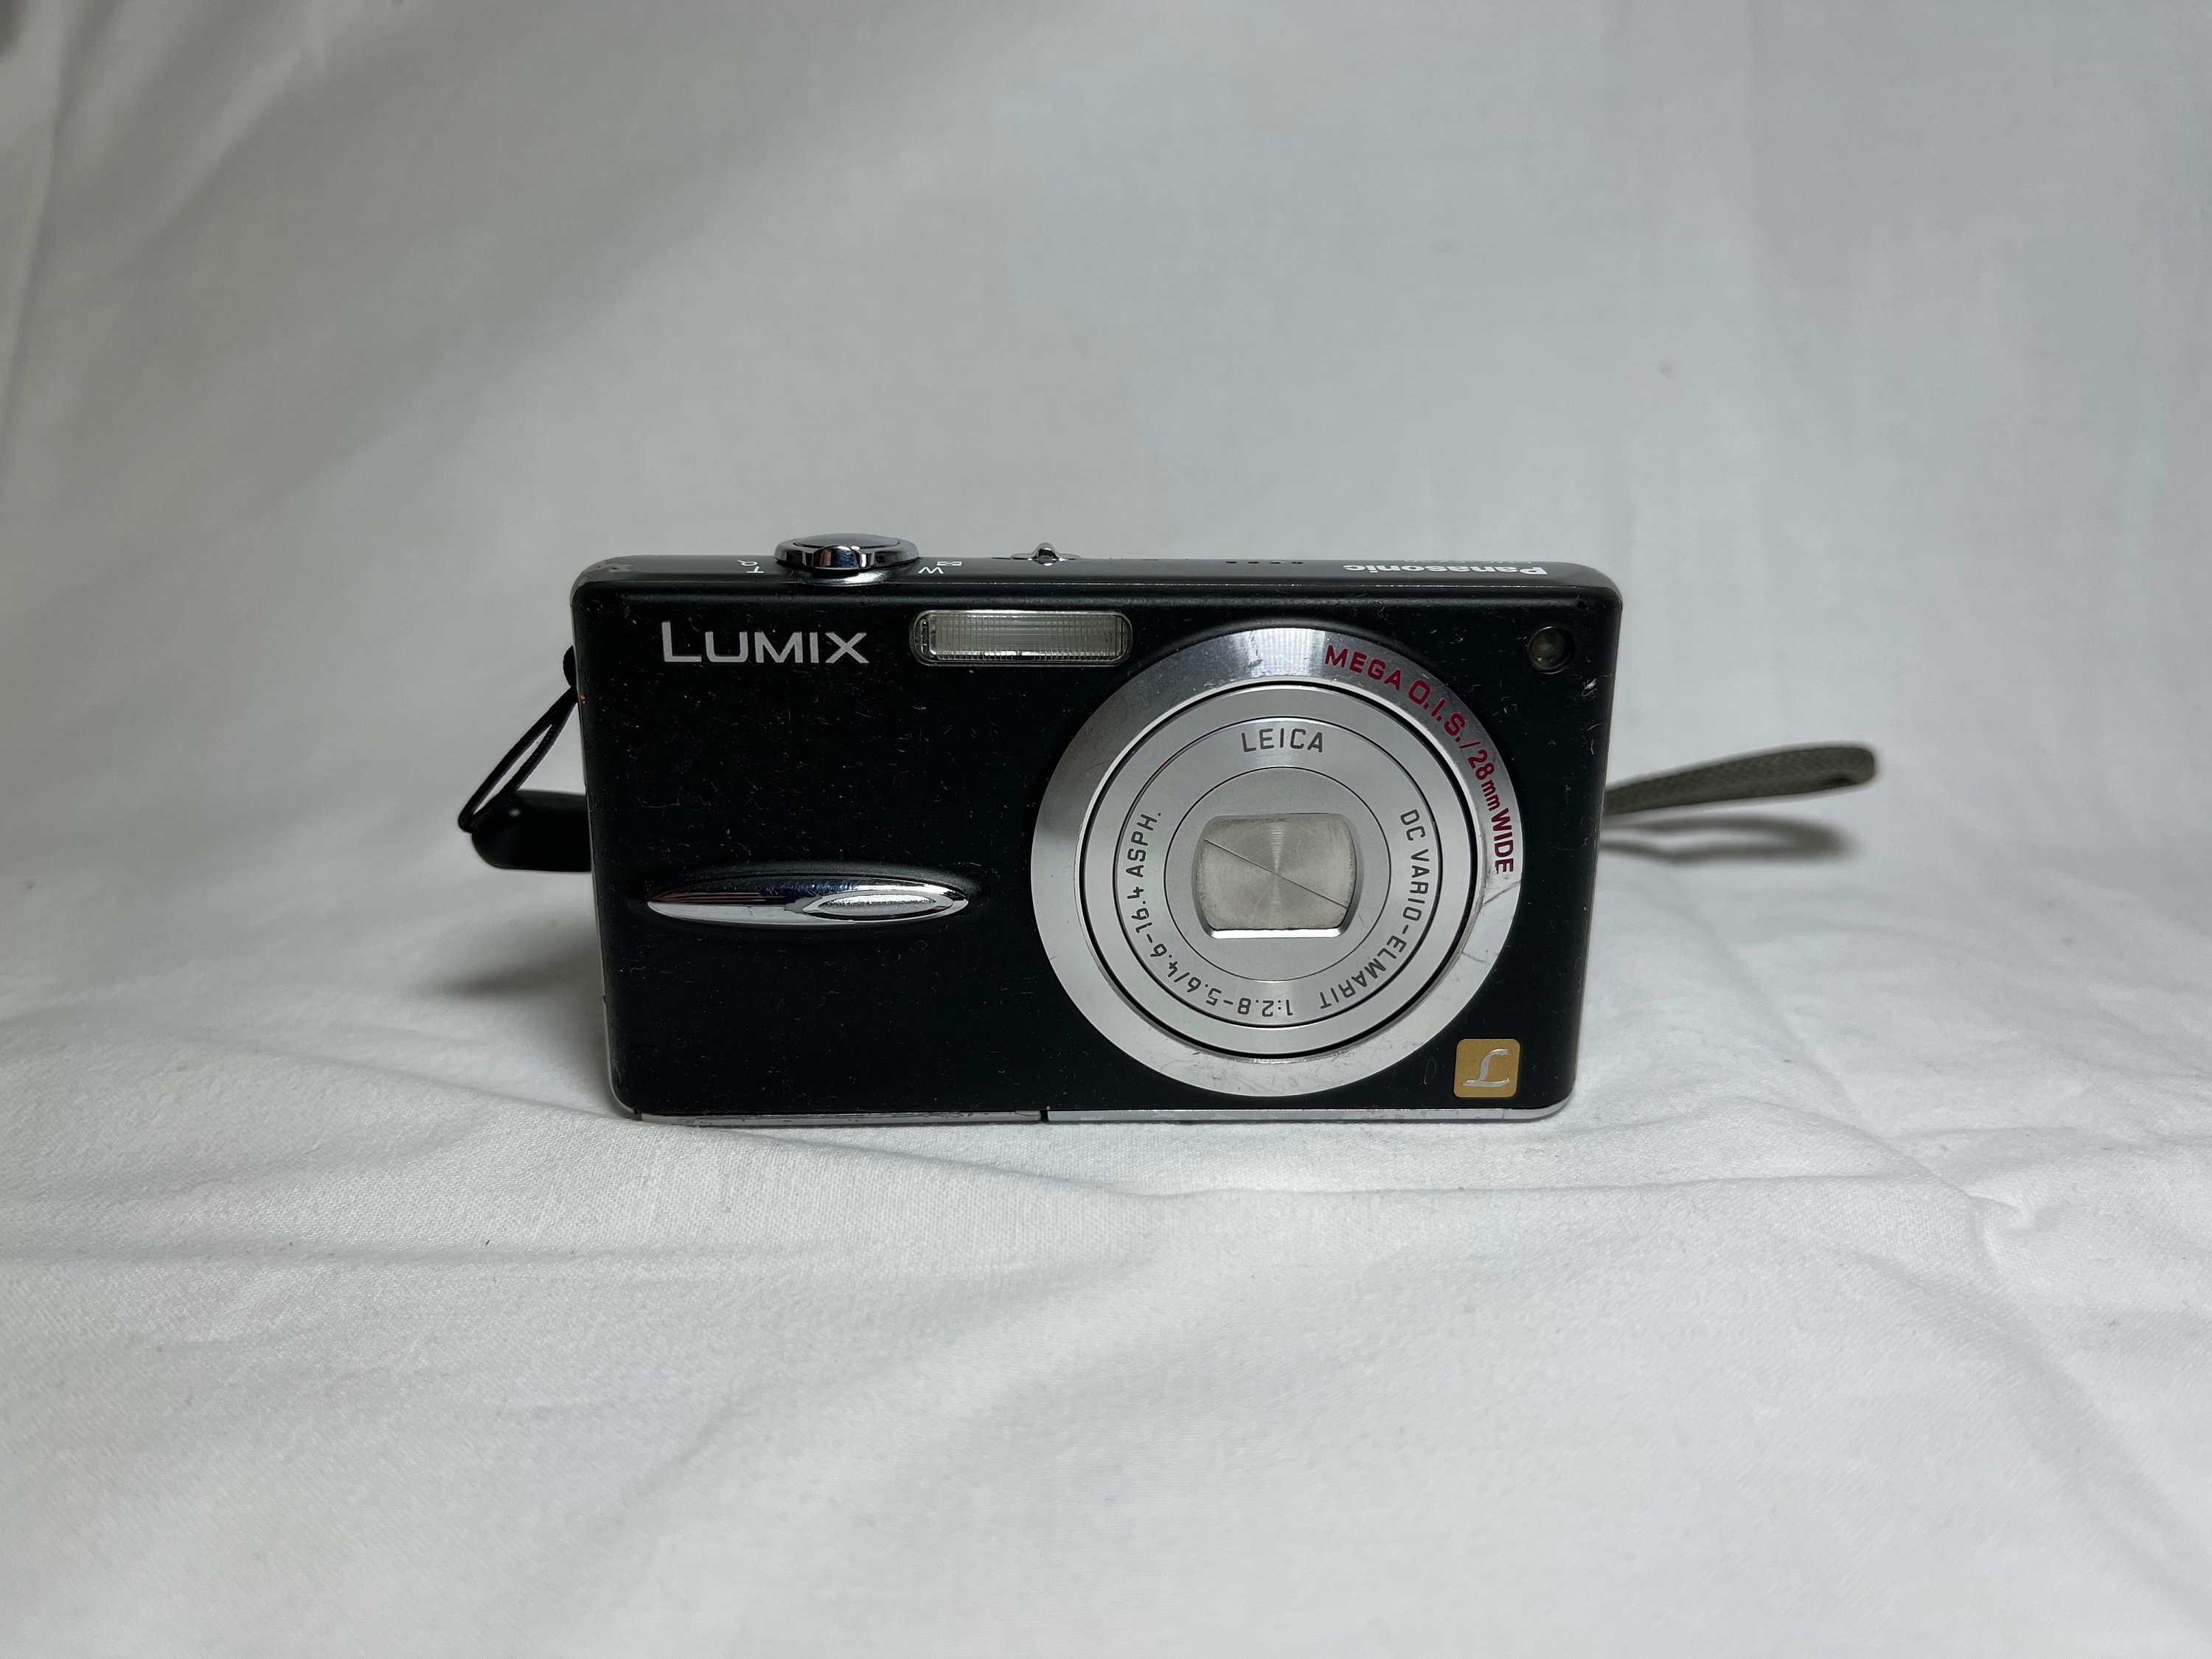 Lumix DMC-FX30 Digital Camera With Leica Lens